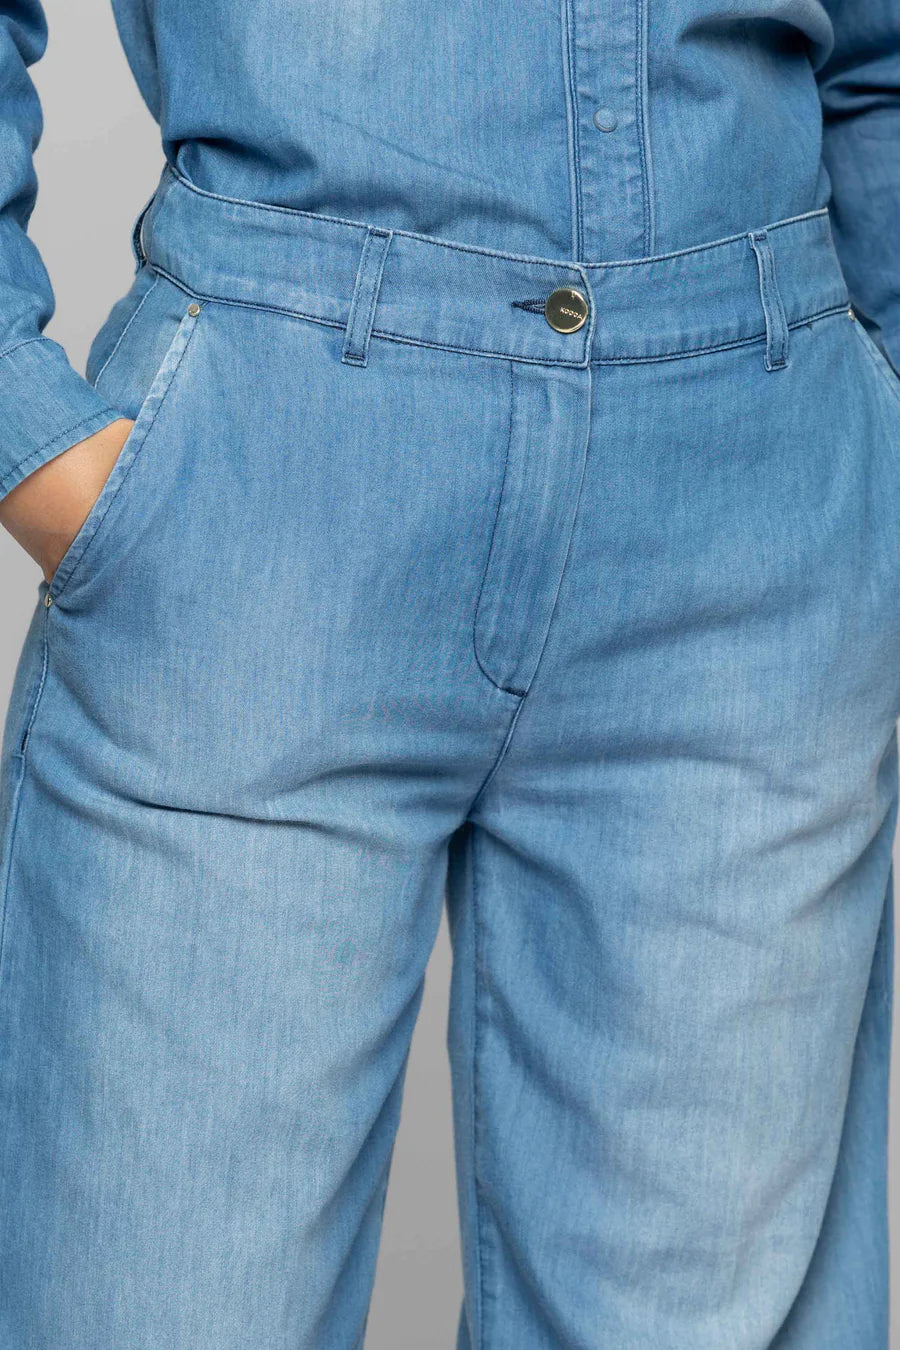 Jeans wide leg Kocca dettaglio